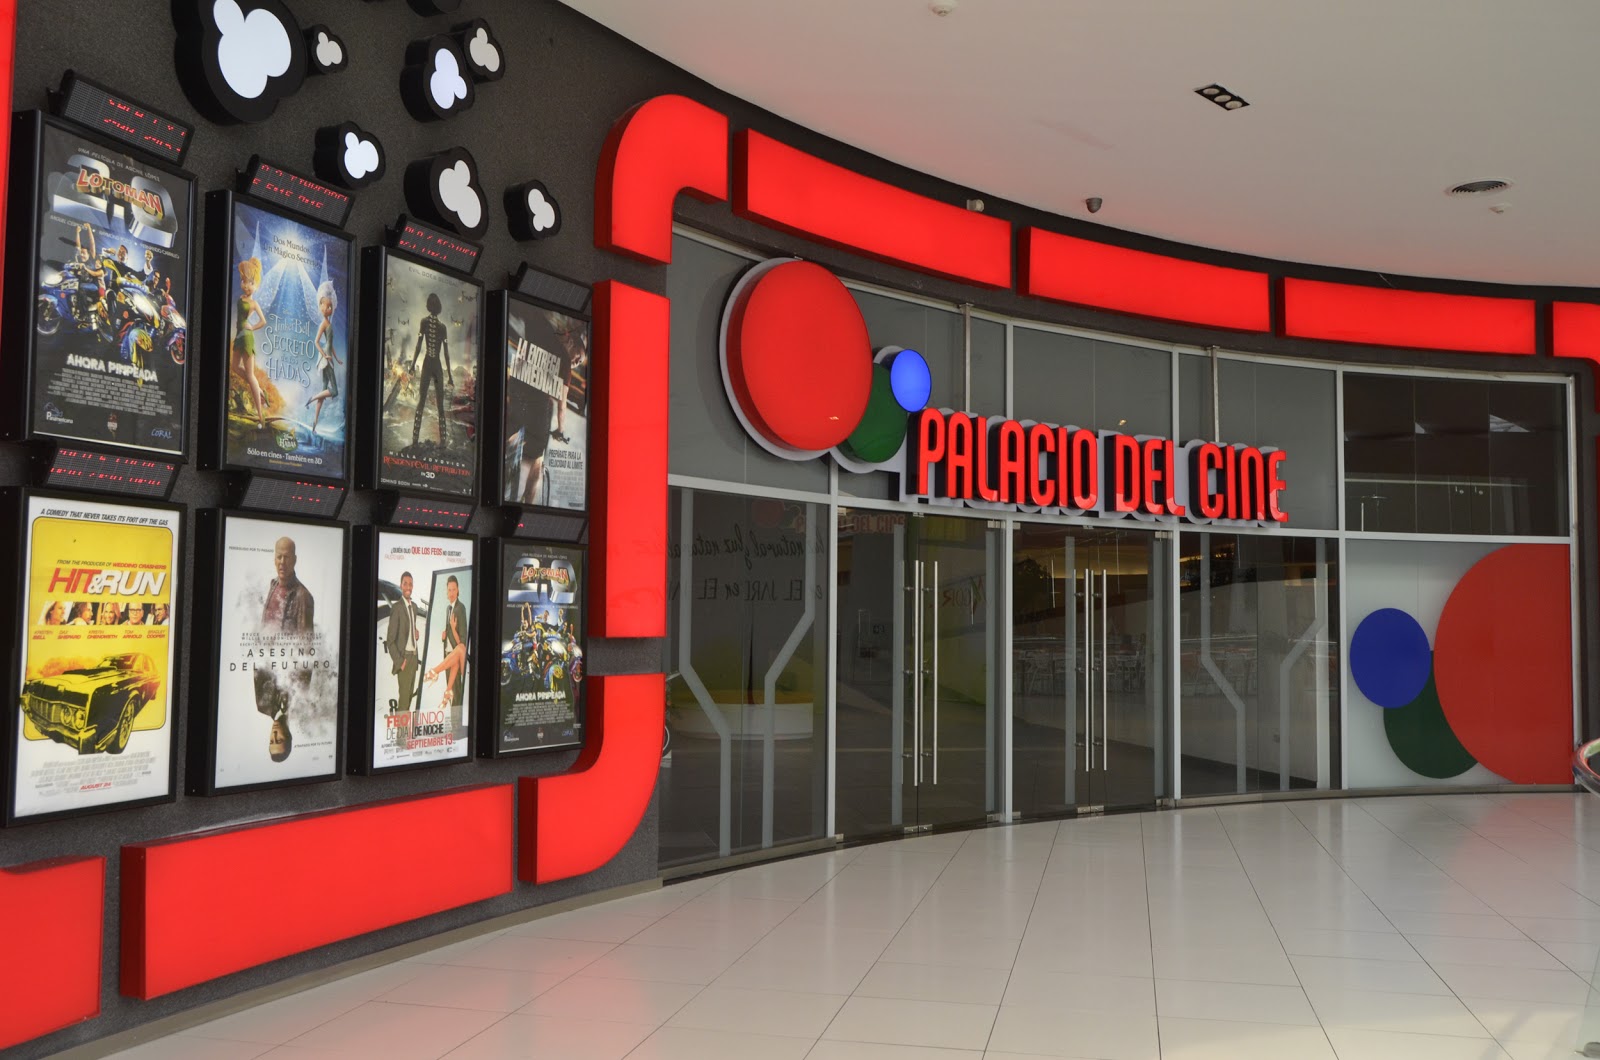 Caribbean Cinemas adquiere activos de salas del Palacio del Cine